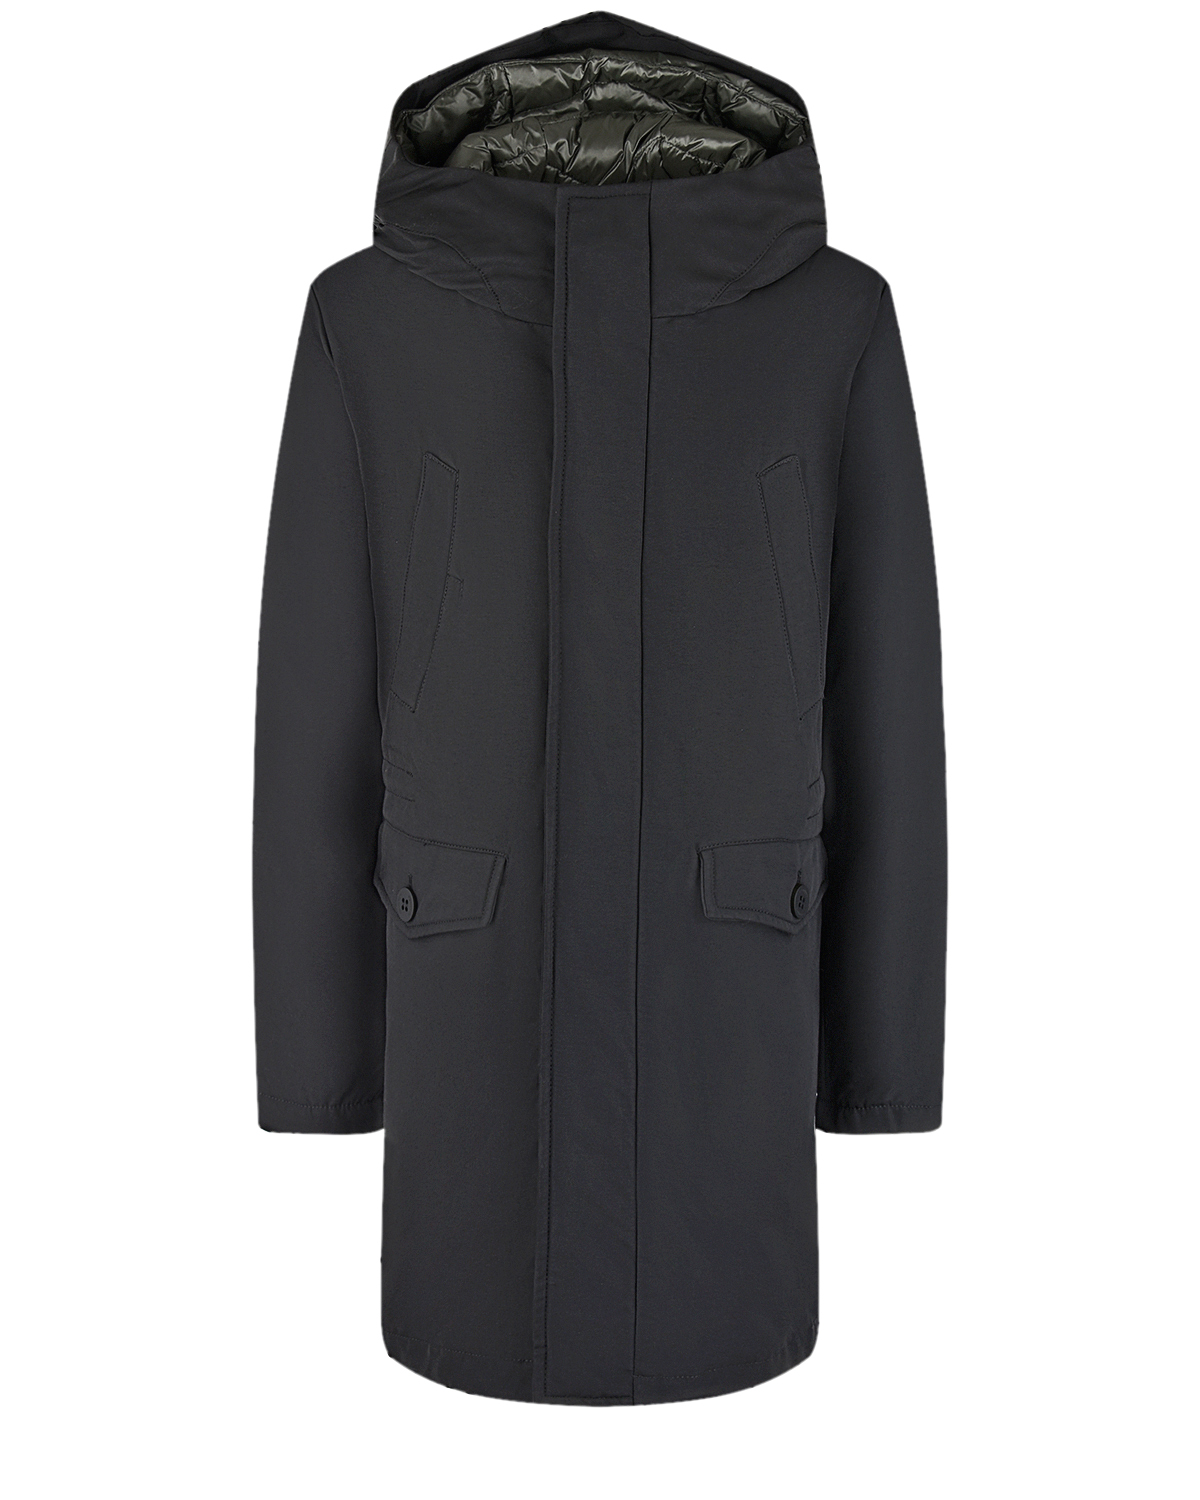 Пуховое пальто черного цвета Freedomday детское, размер 128 - фото 1